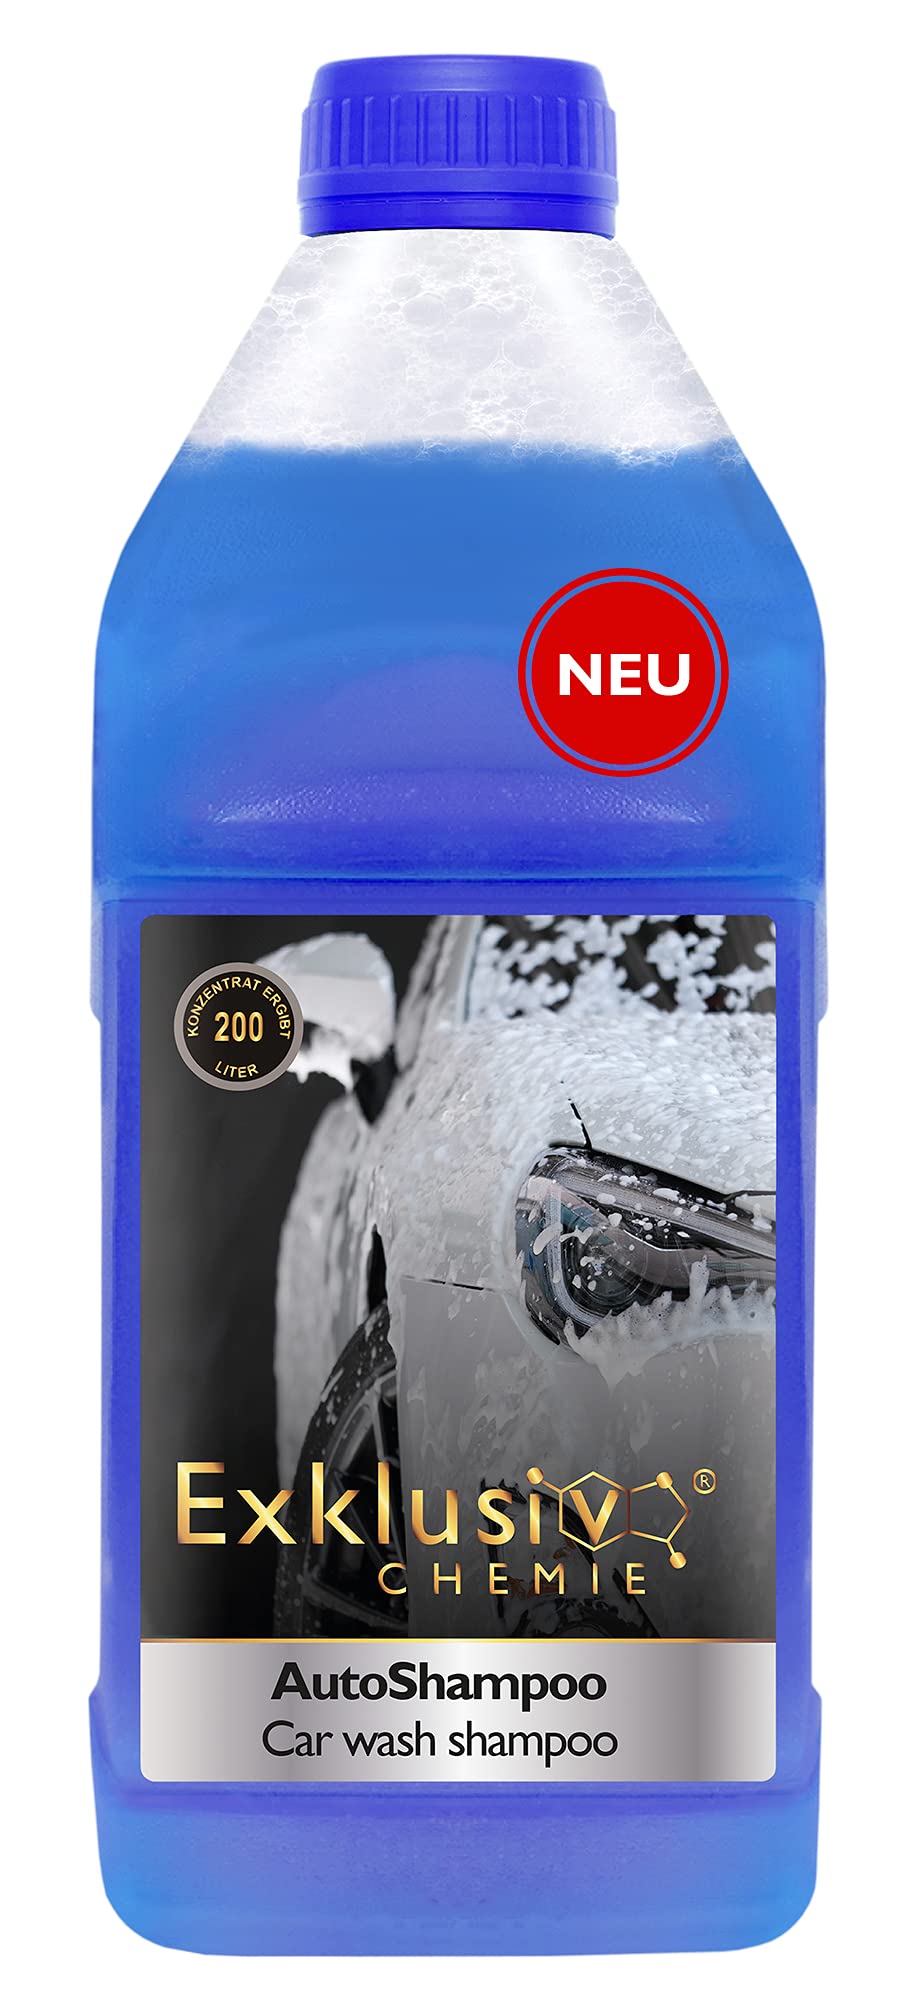 Exklusiv Chemie NEU Autoshampoo Konzentrat Ergibt 200 Liter | pH-neutral | Glänzenden Auto-Lack und Scheiben | Auto Shampoo | Autowaschmittel | 1000ml von Exklusiv Chemie